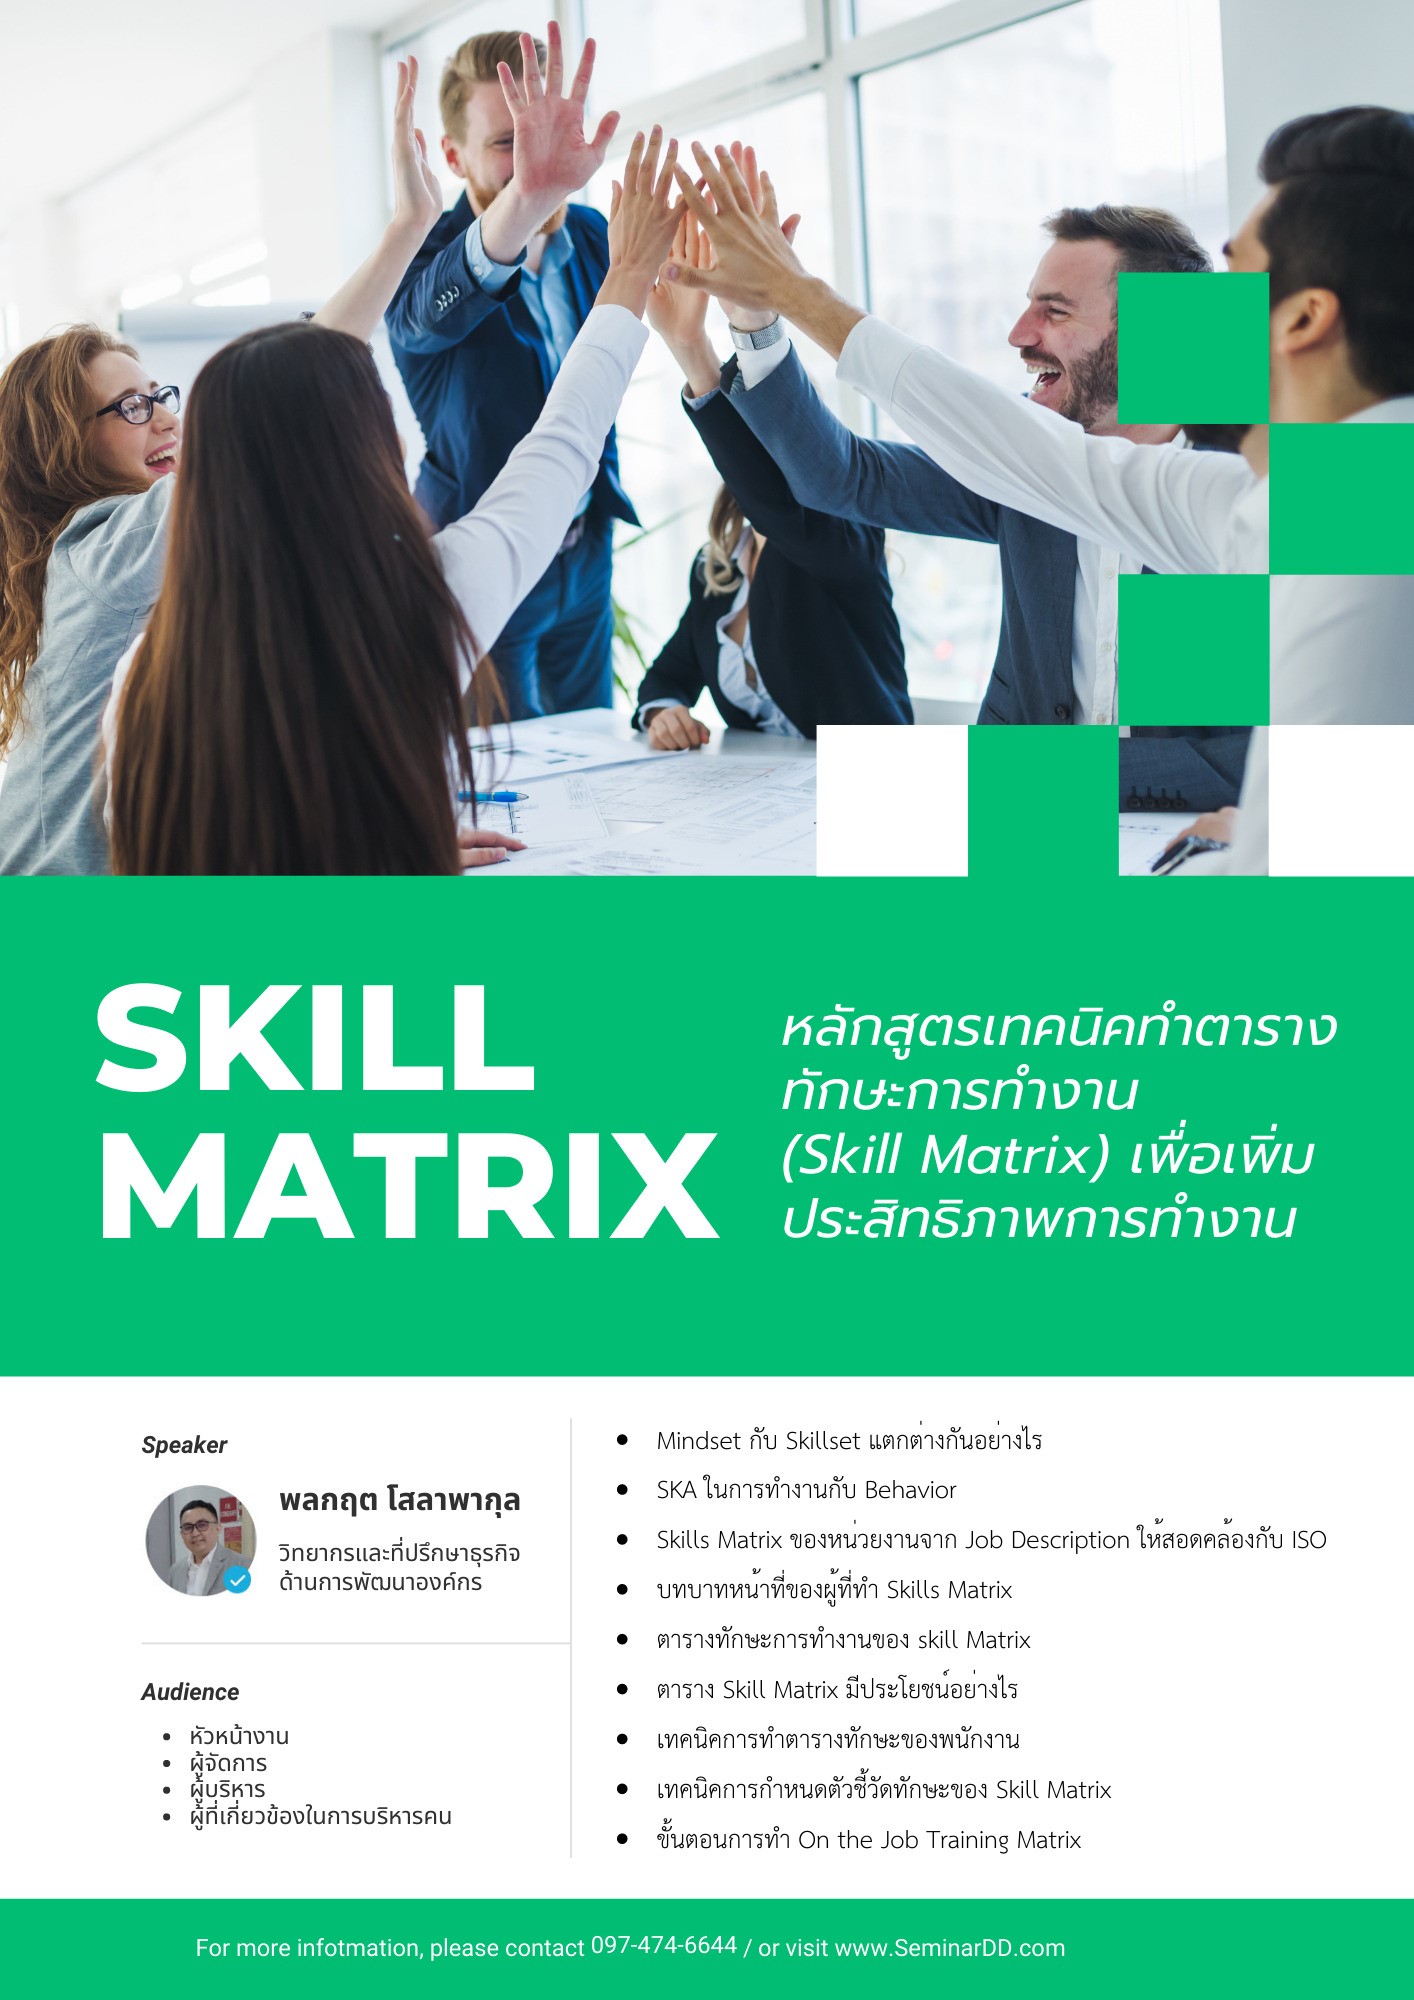 เทคนิคทำตารางทักษะการทำงาน (Skill Matrix) เพื่อเพิ่มประสิทธิภาพการทำงาน